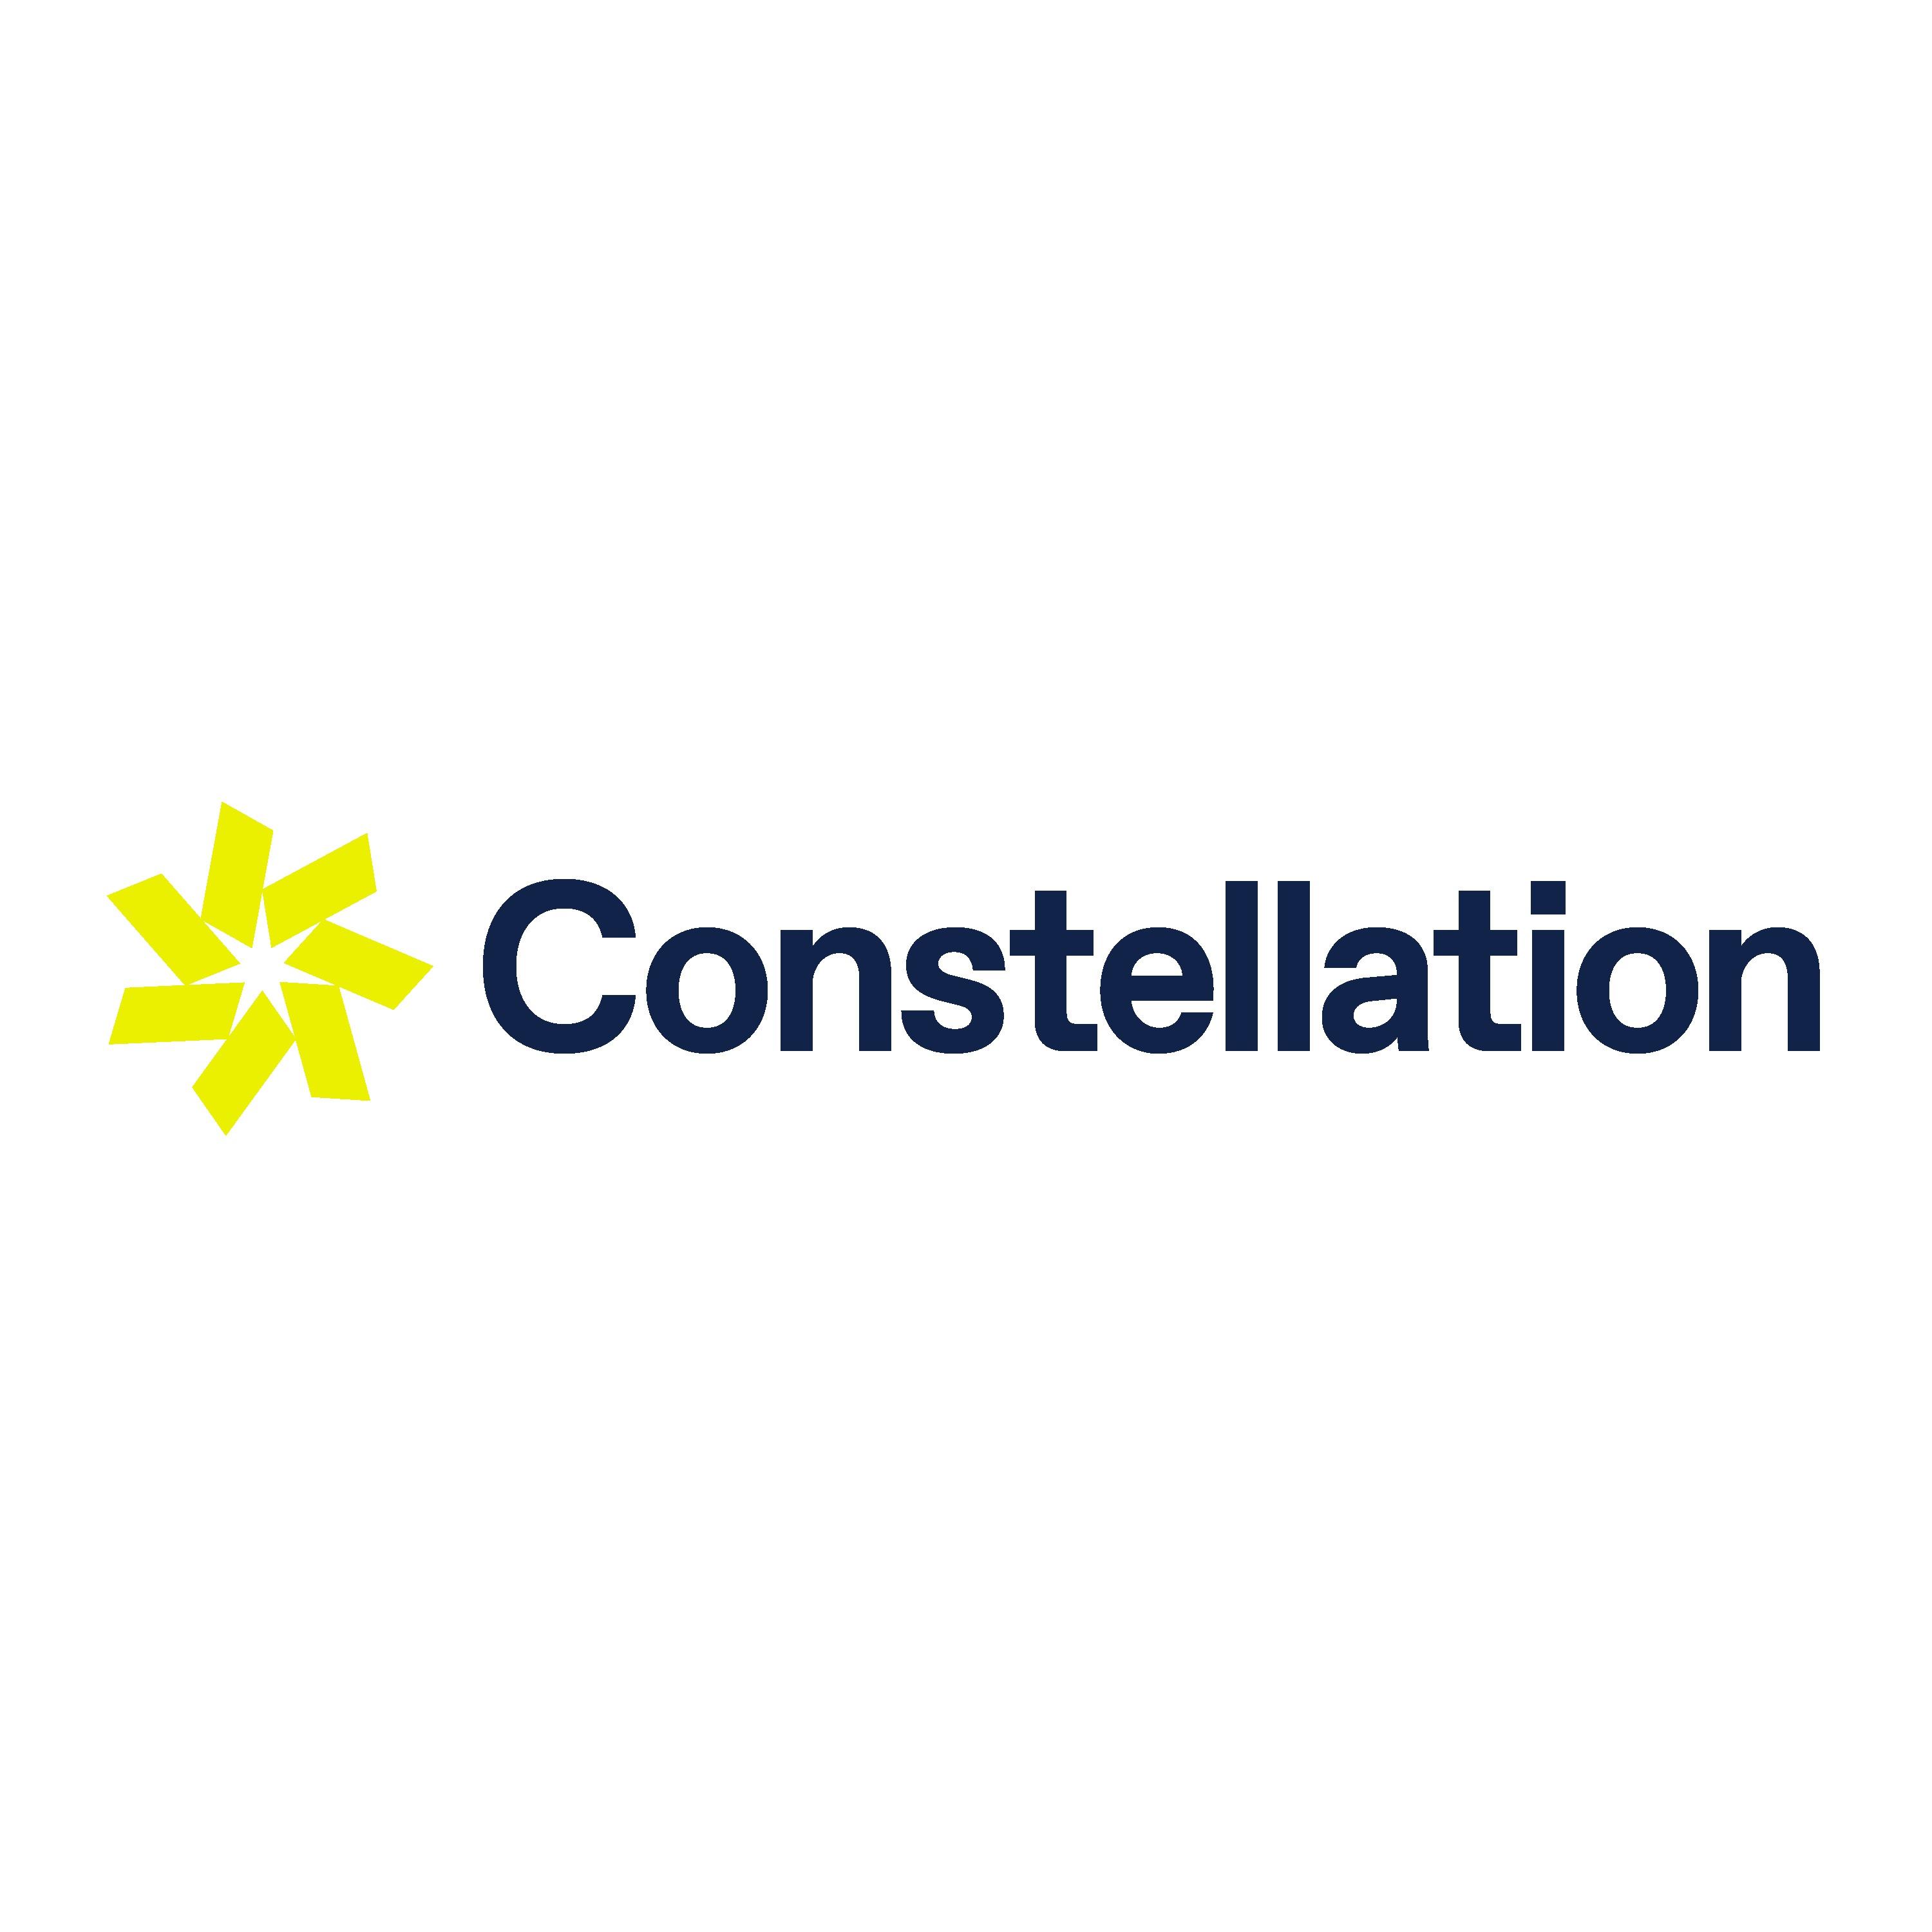 Constellation Health Services Logo